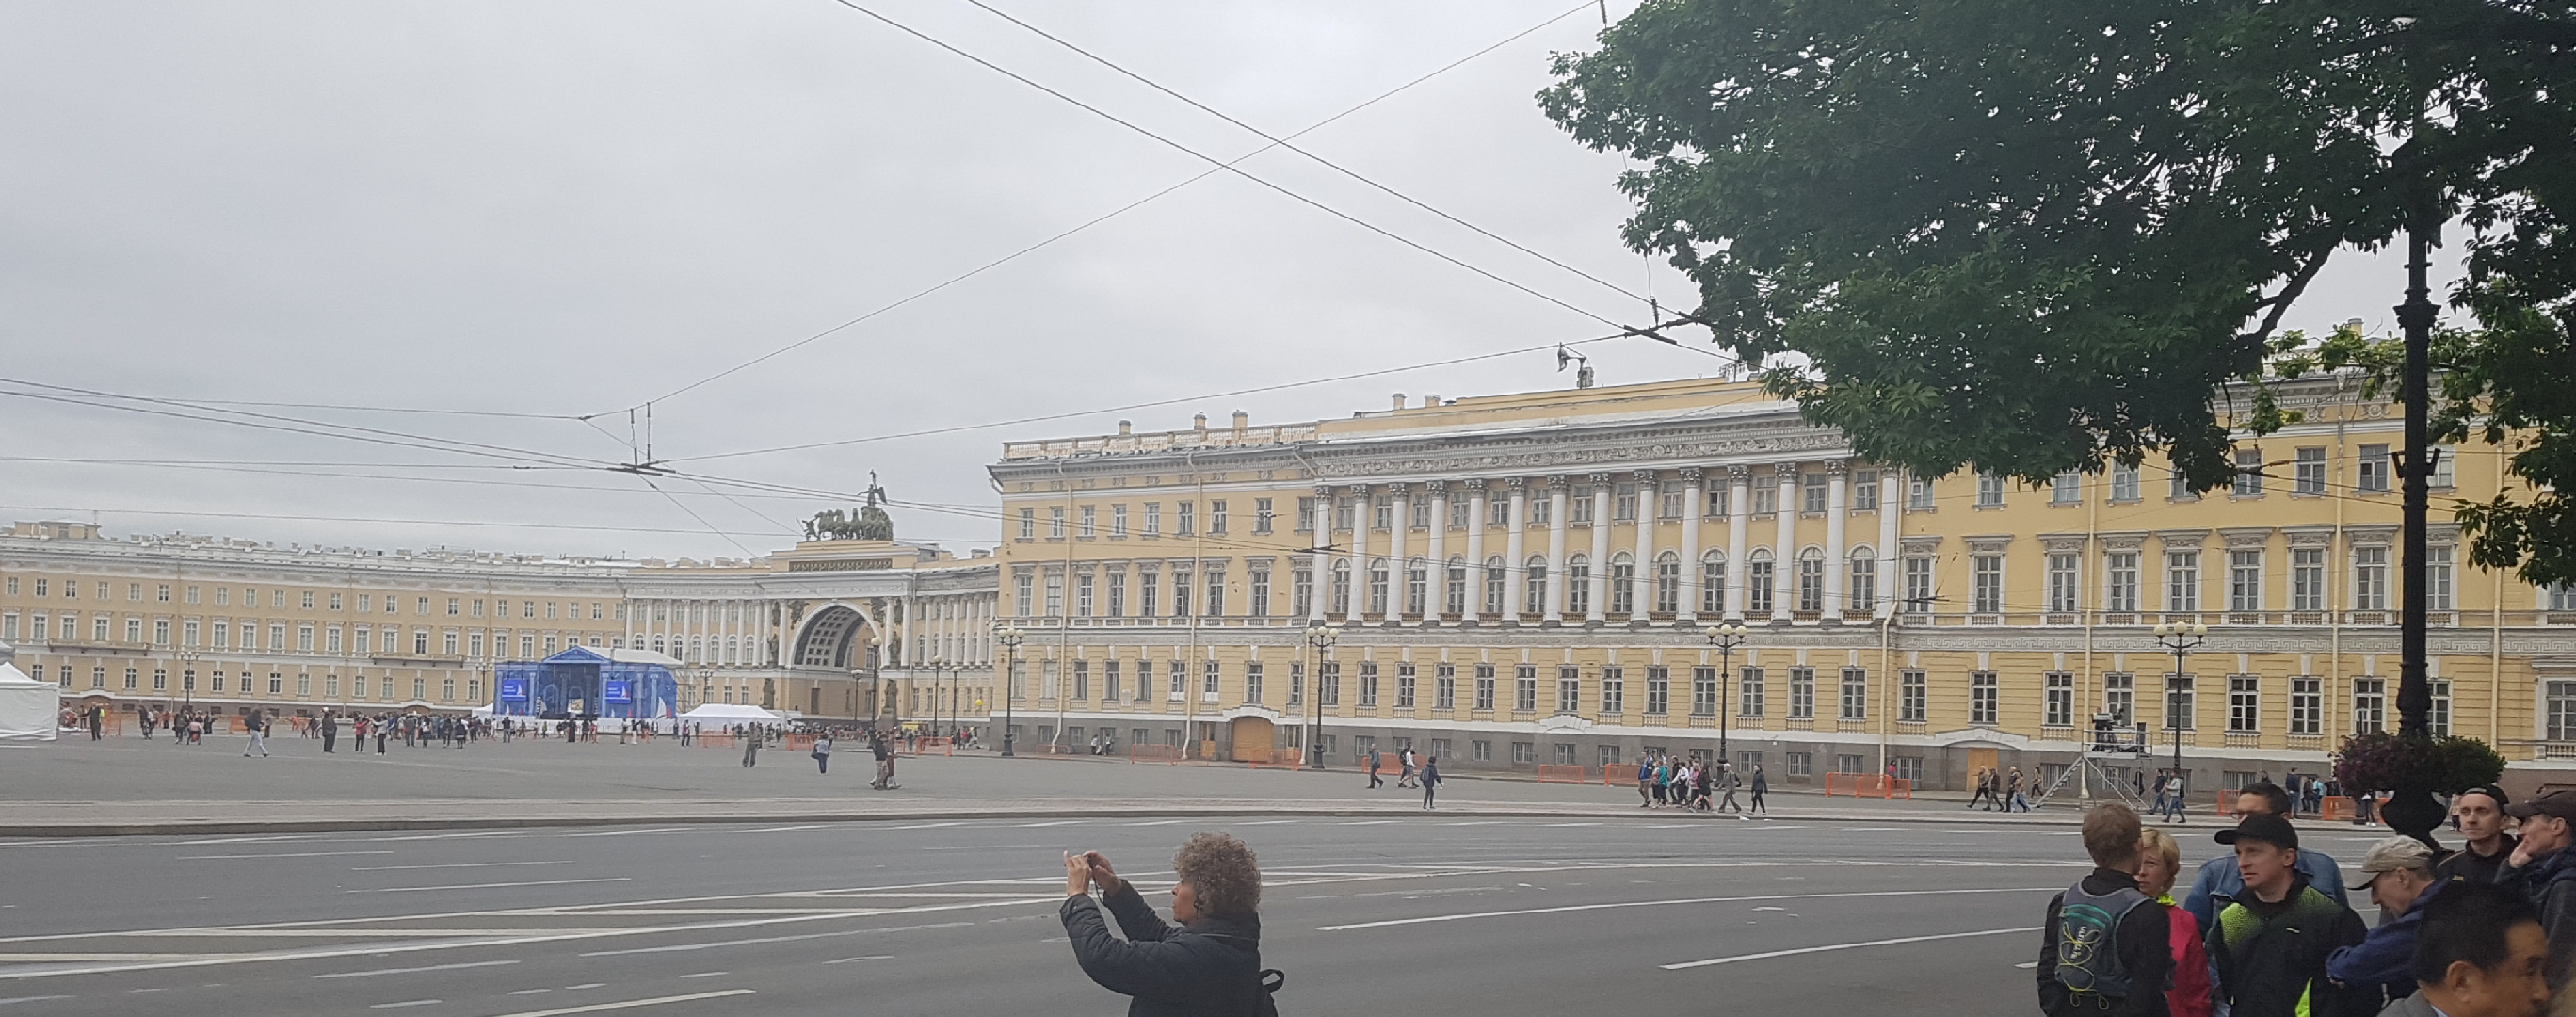 20170709-100415-St-Petersburg-Hermitage-SR-2.jpg